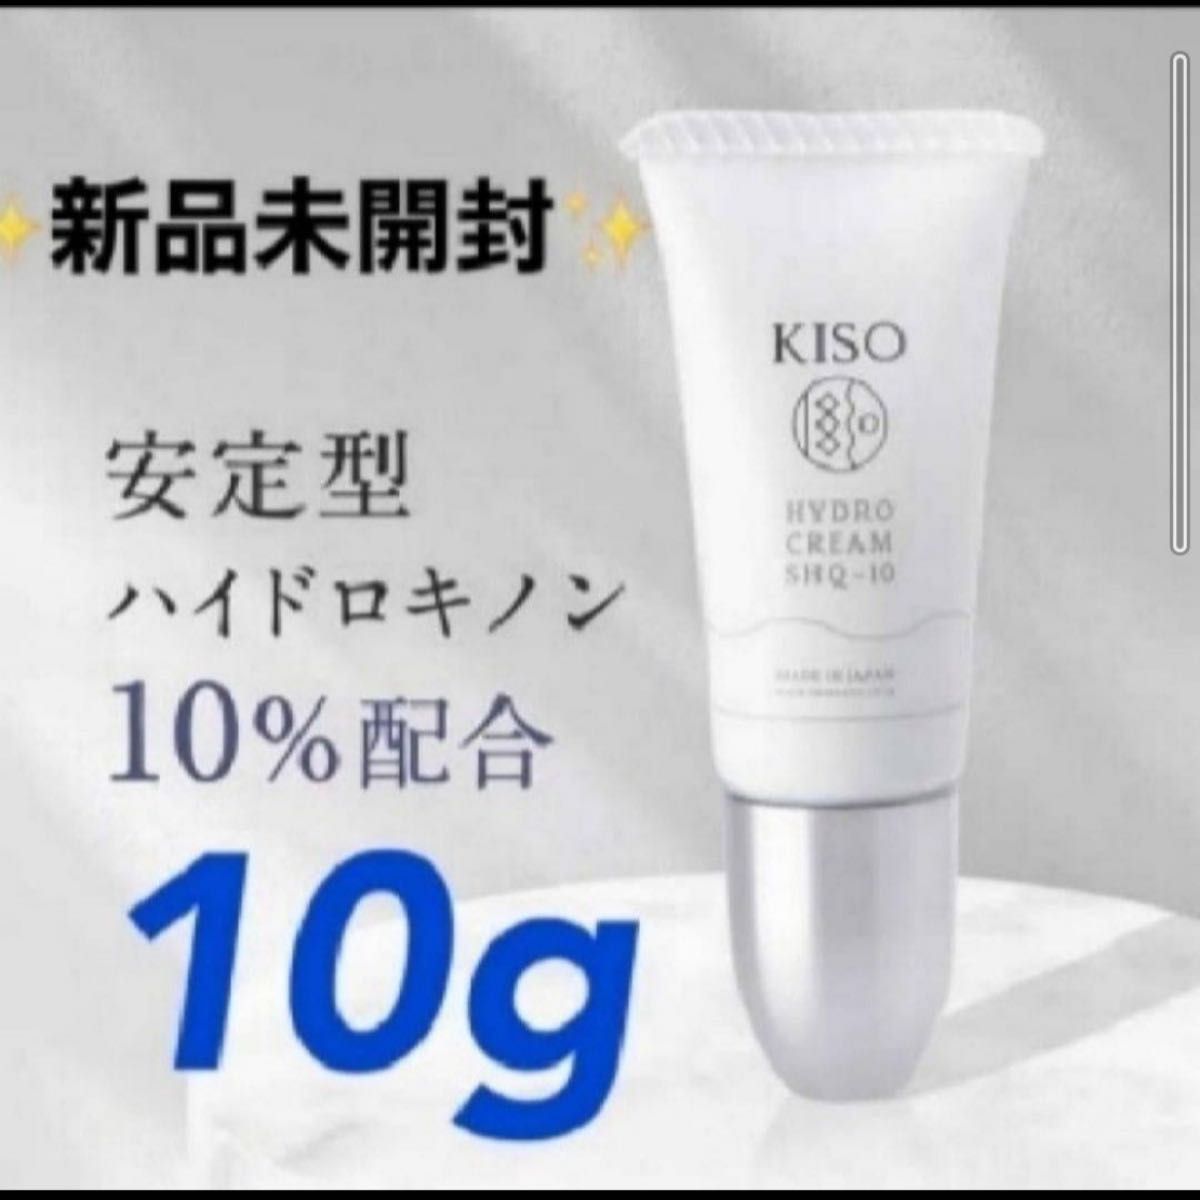 KISO 安定型ハイドロキノンクリーム10% 10g